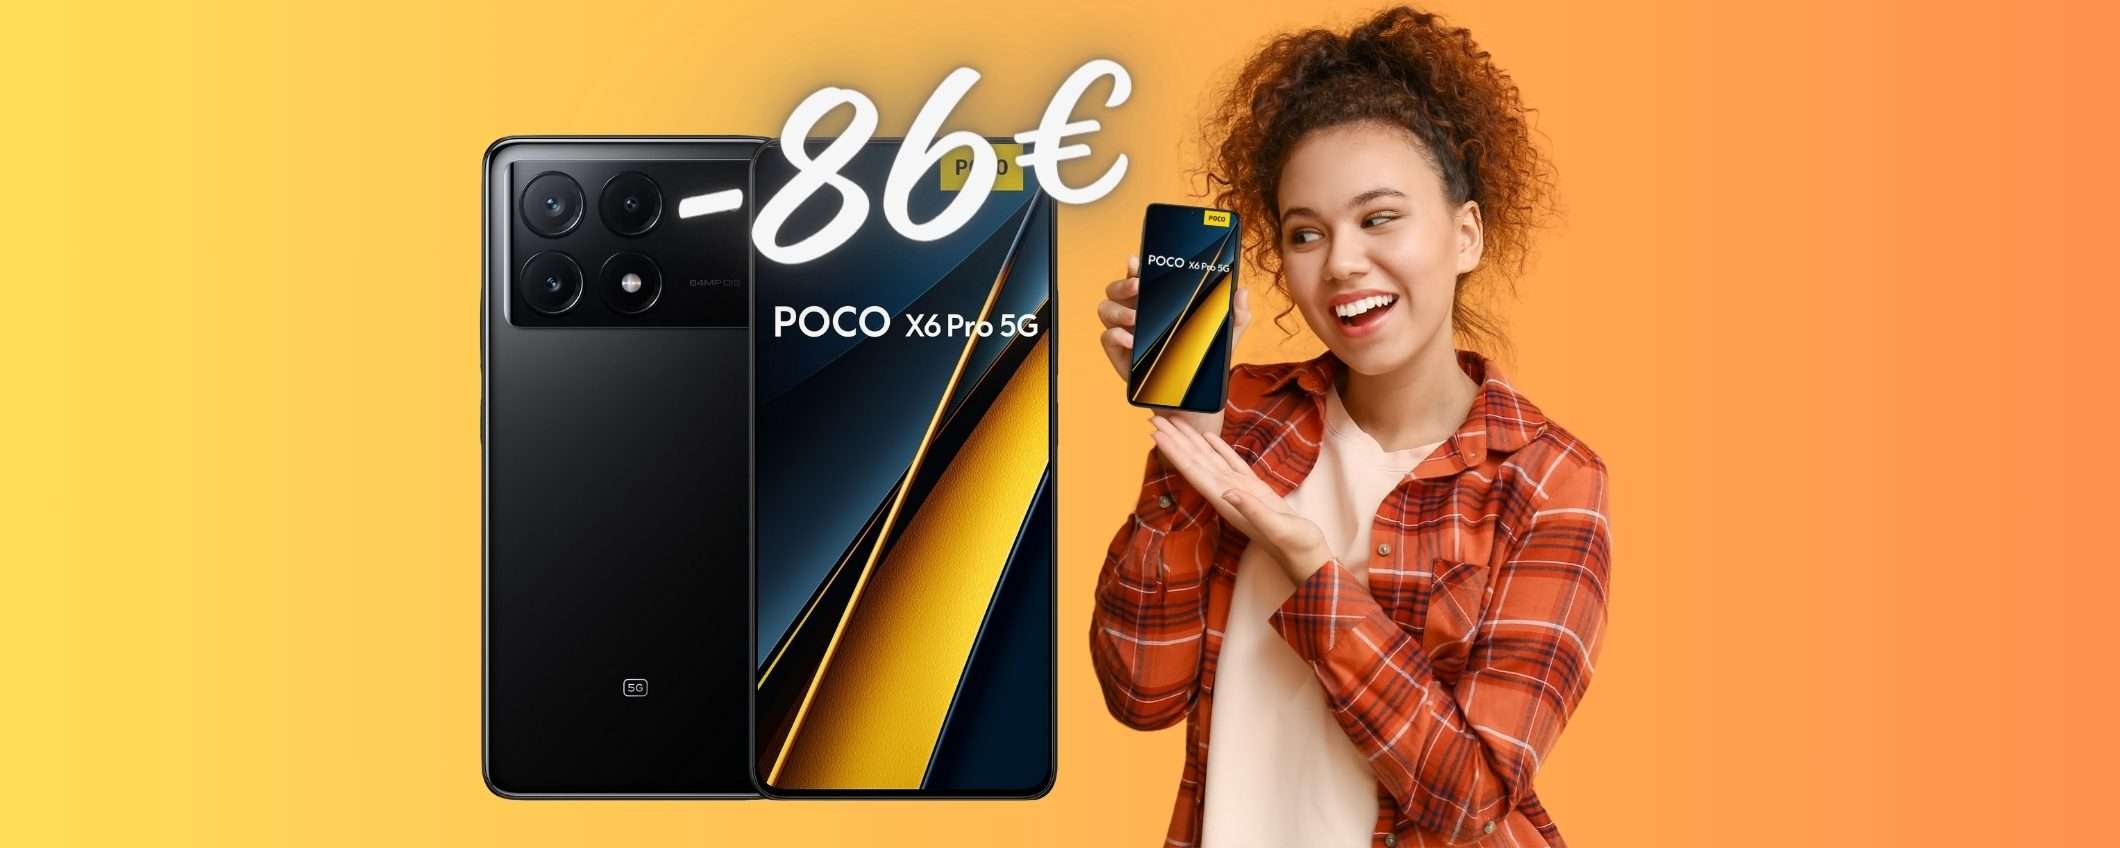 POCO X6 Pro con 8GB di RAM e memoria interna da 256GB (-86€)